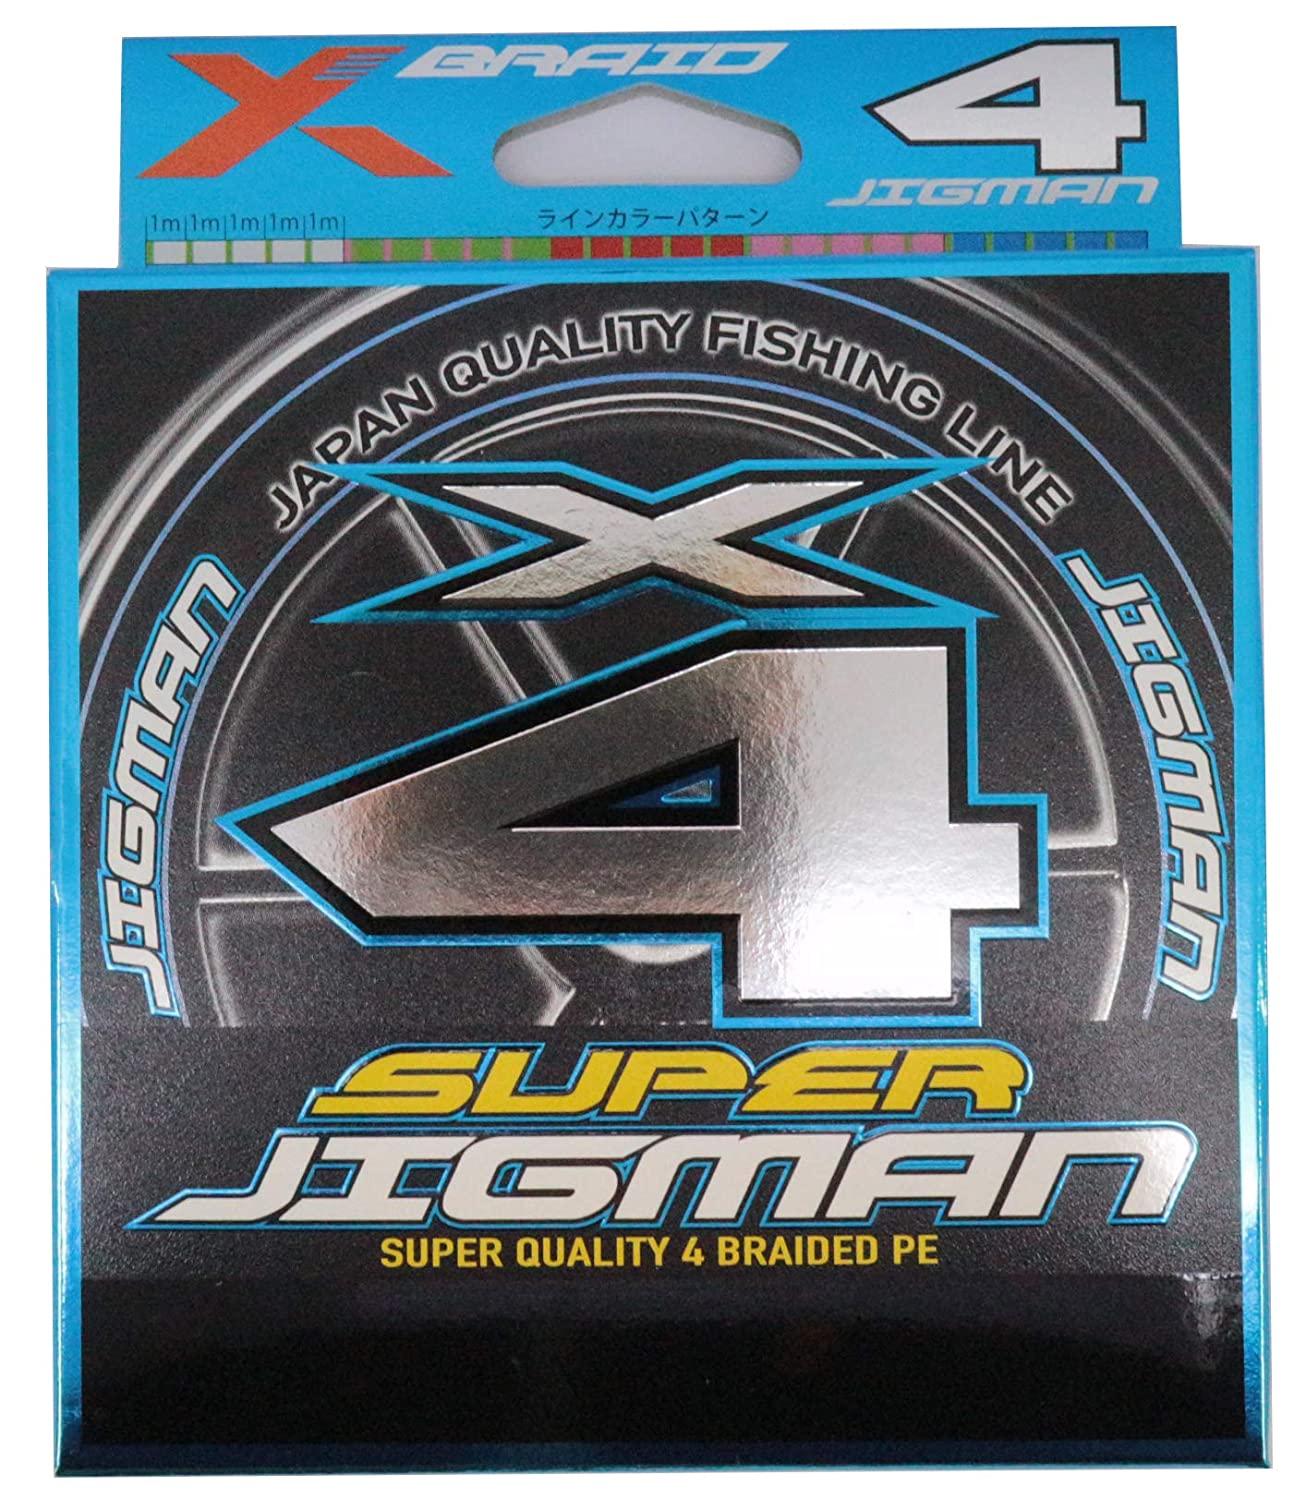  X-BRAID SUPER JIGMAN X4 200m 2.5 35lb